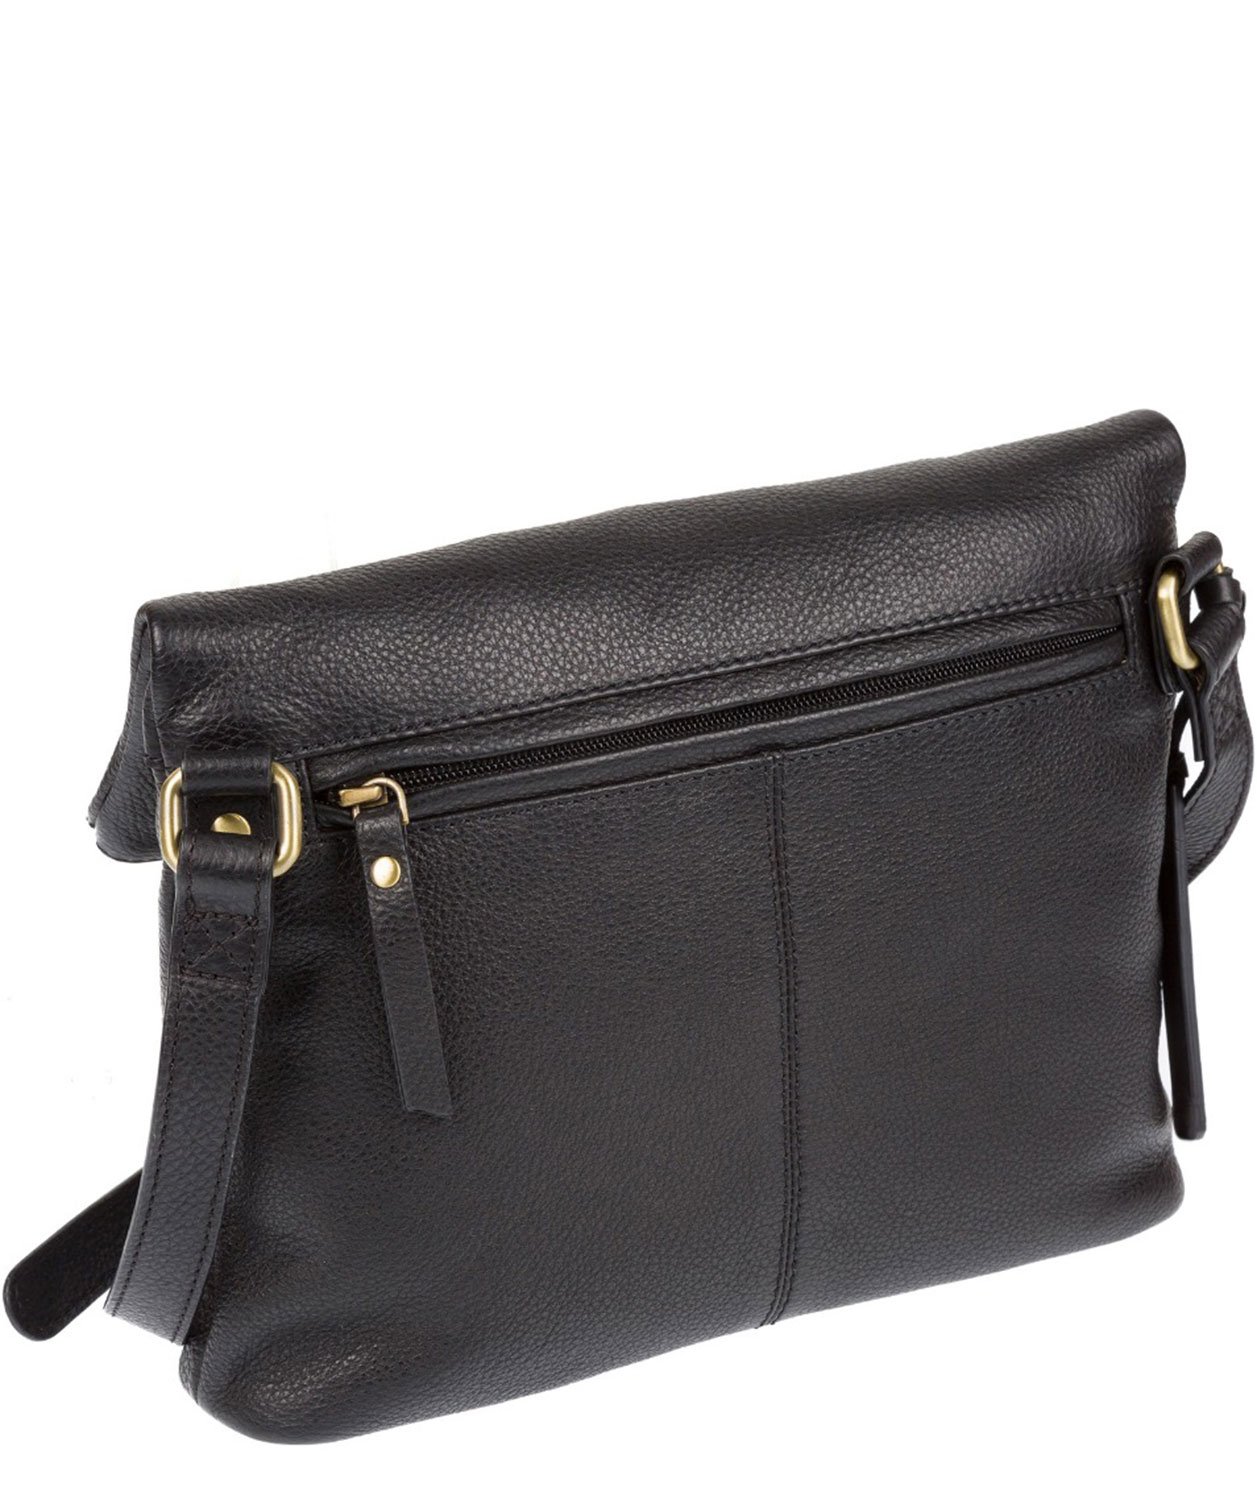 Black Leather Shoulder Bag, Cross Body Bag